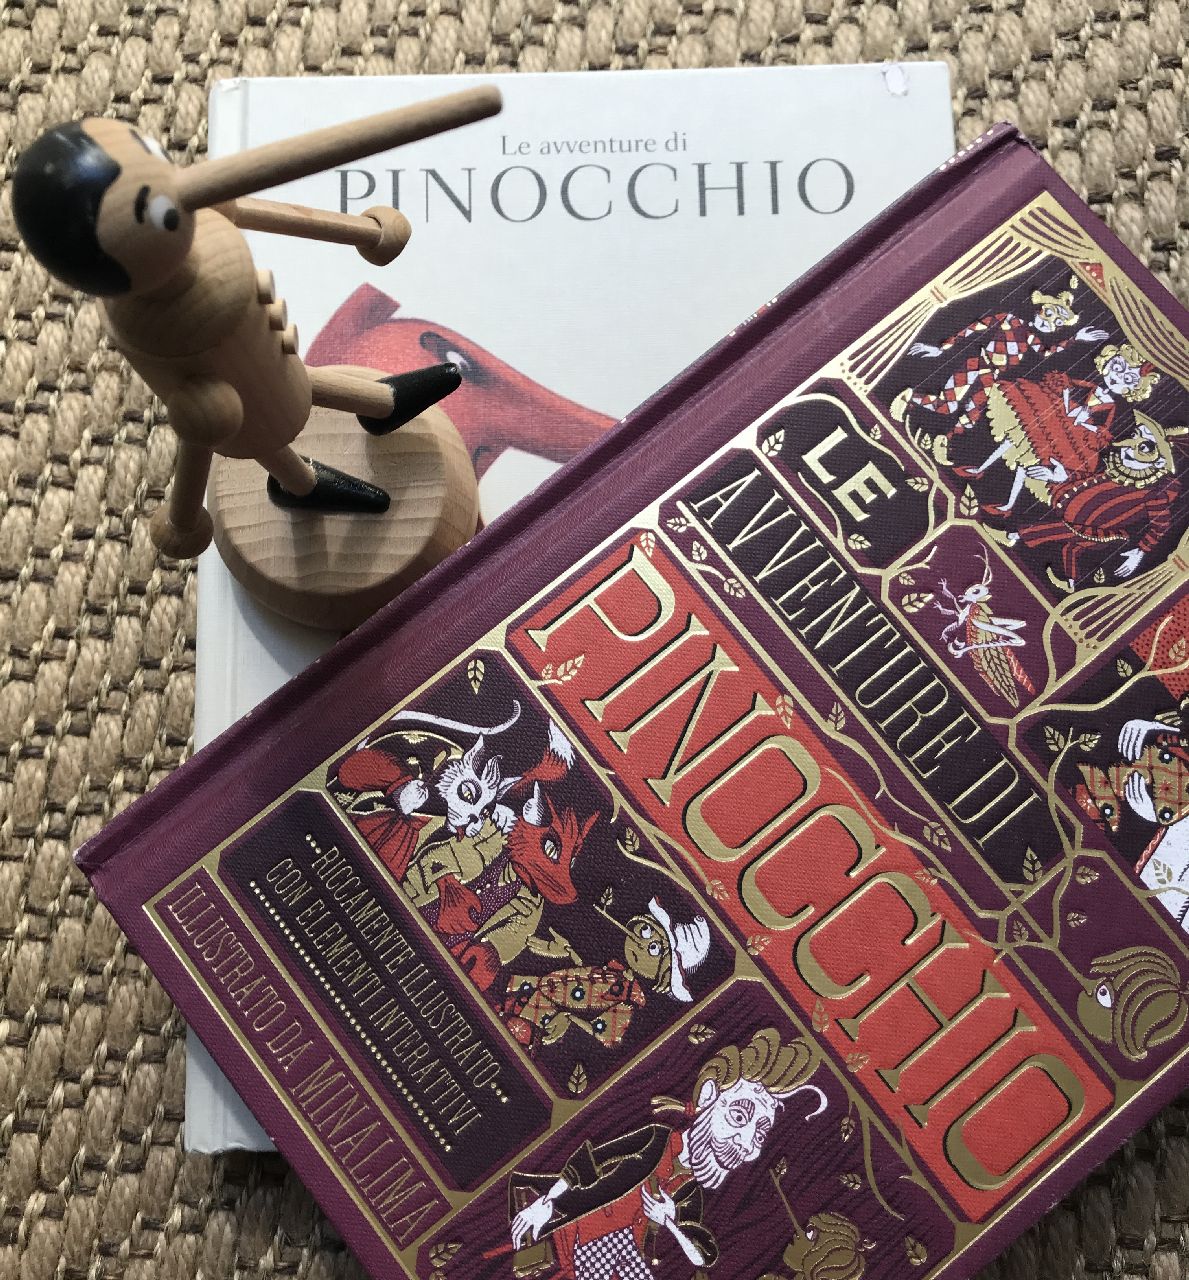 Carlo Collodi, Le avventure di Pinocchio